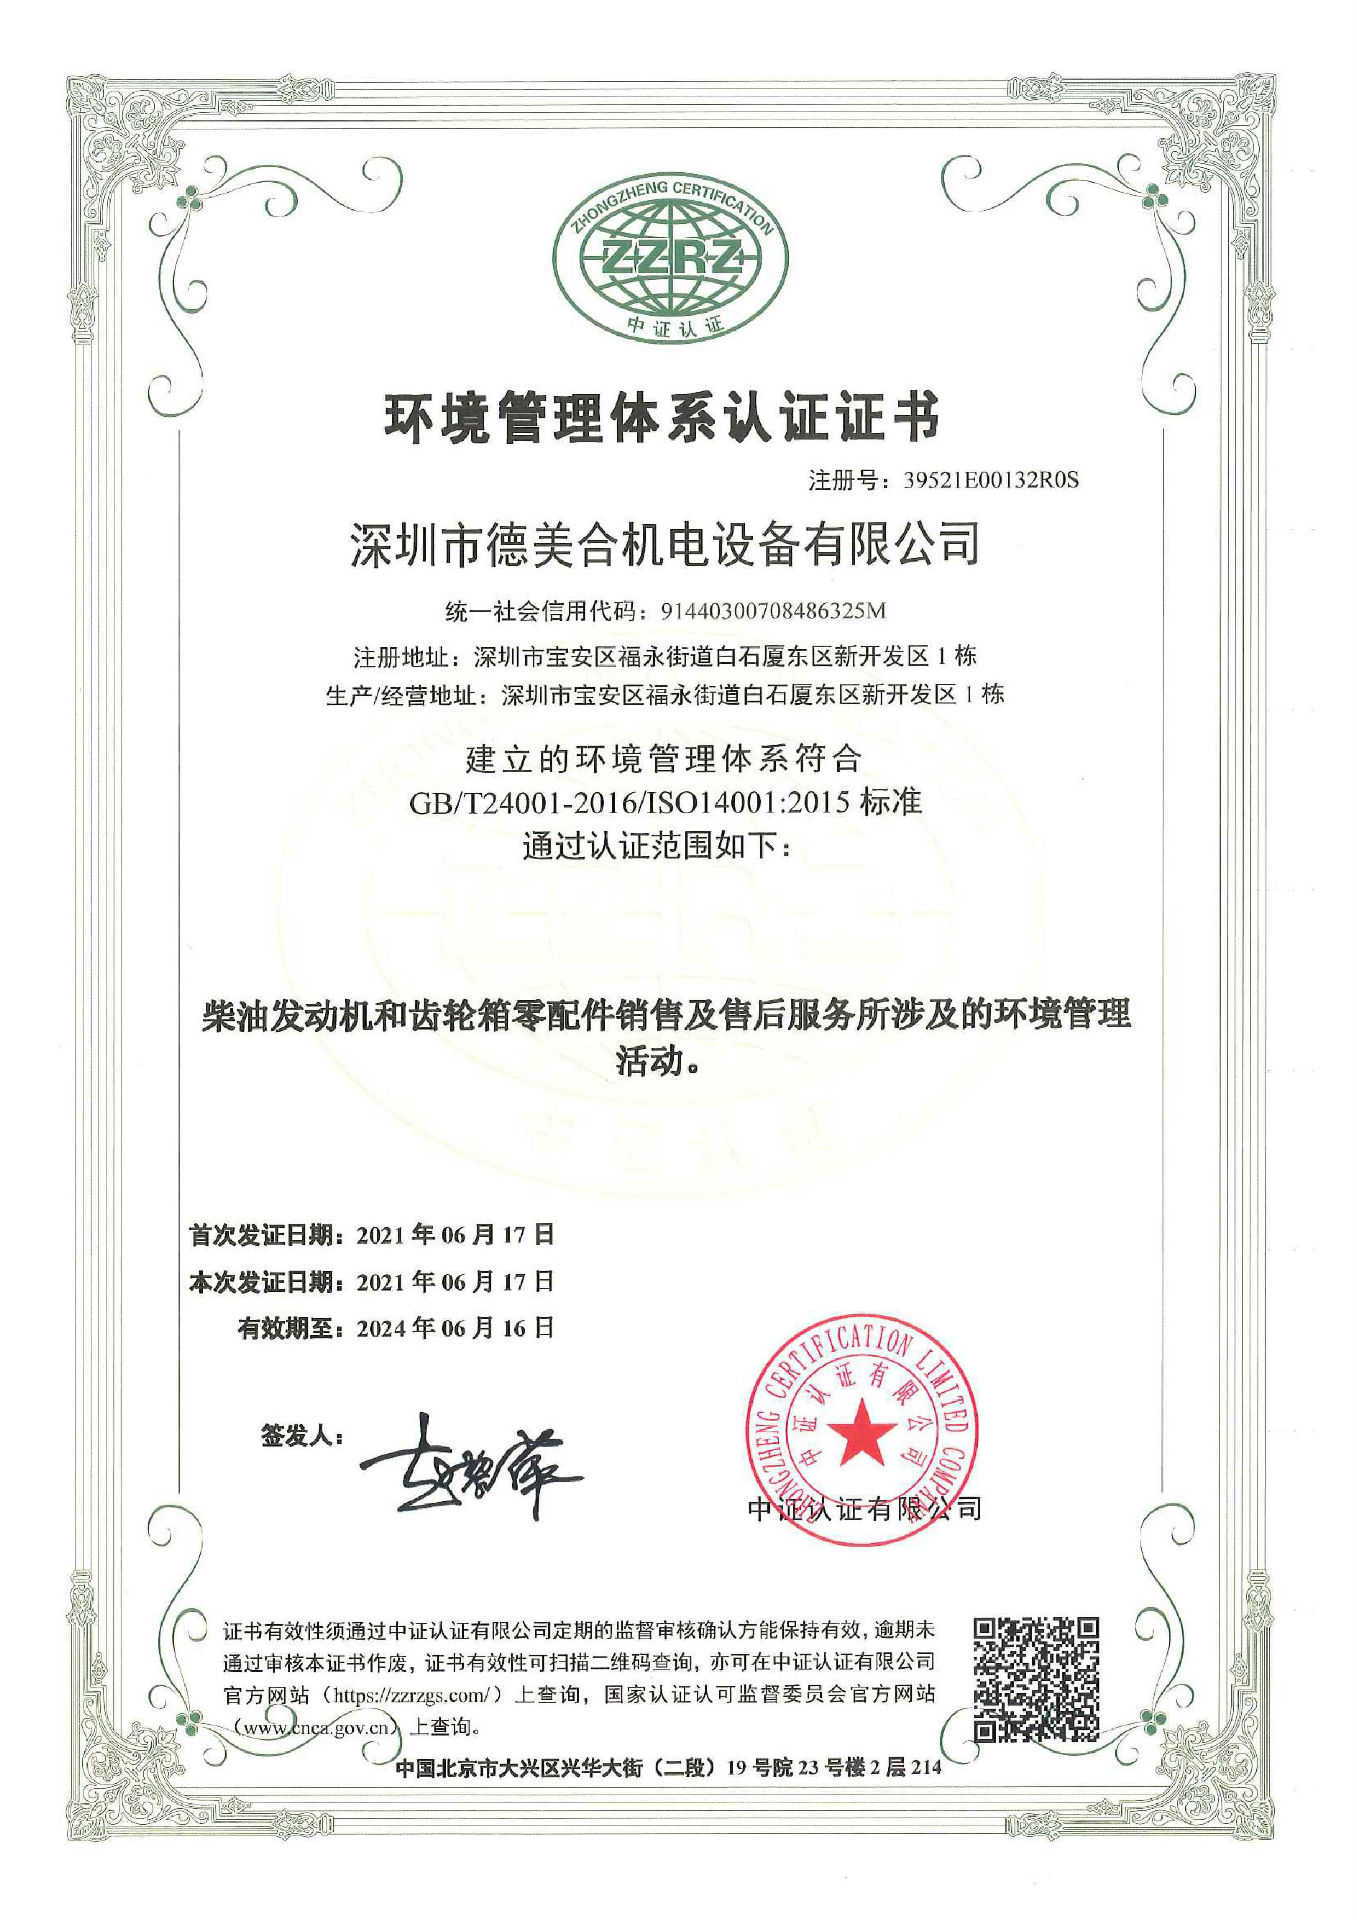 热烈祝贺深圳市威尼斯欢乐娱人v675合机电设备有限公司顺利通过ISO三体系认证